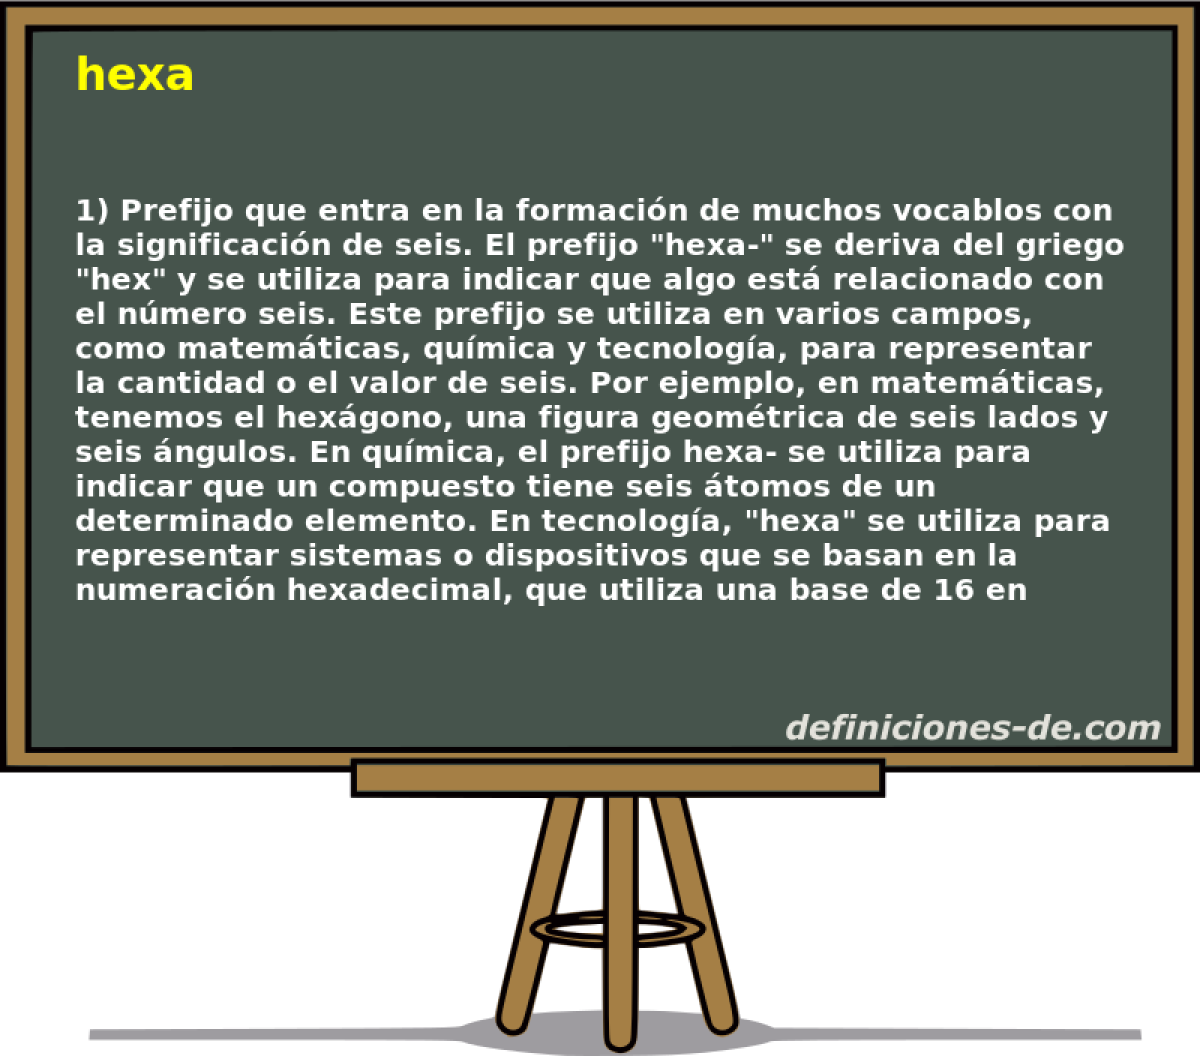 hexa 